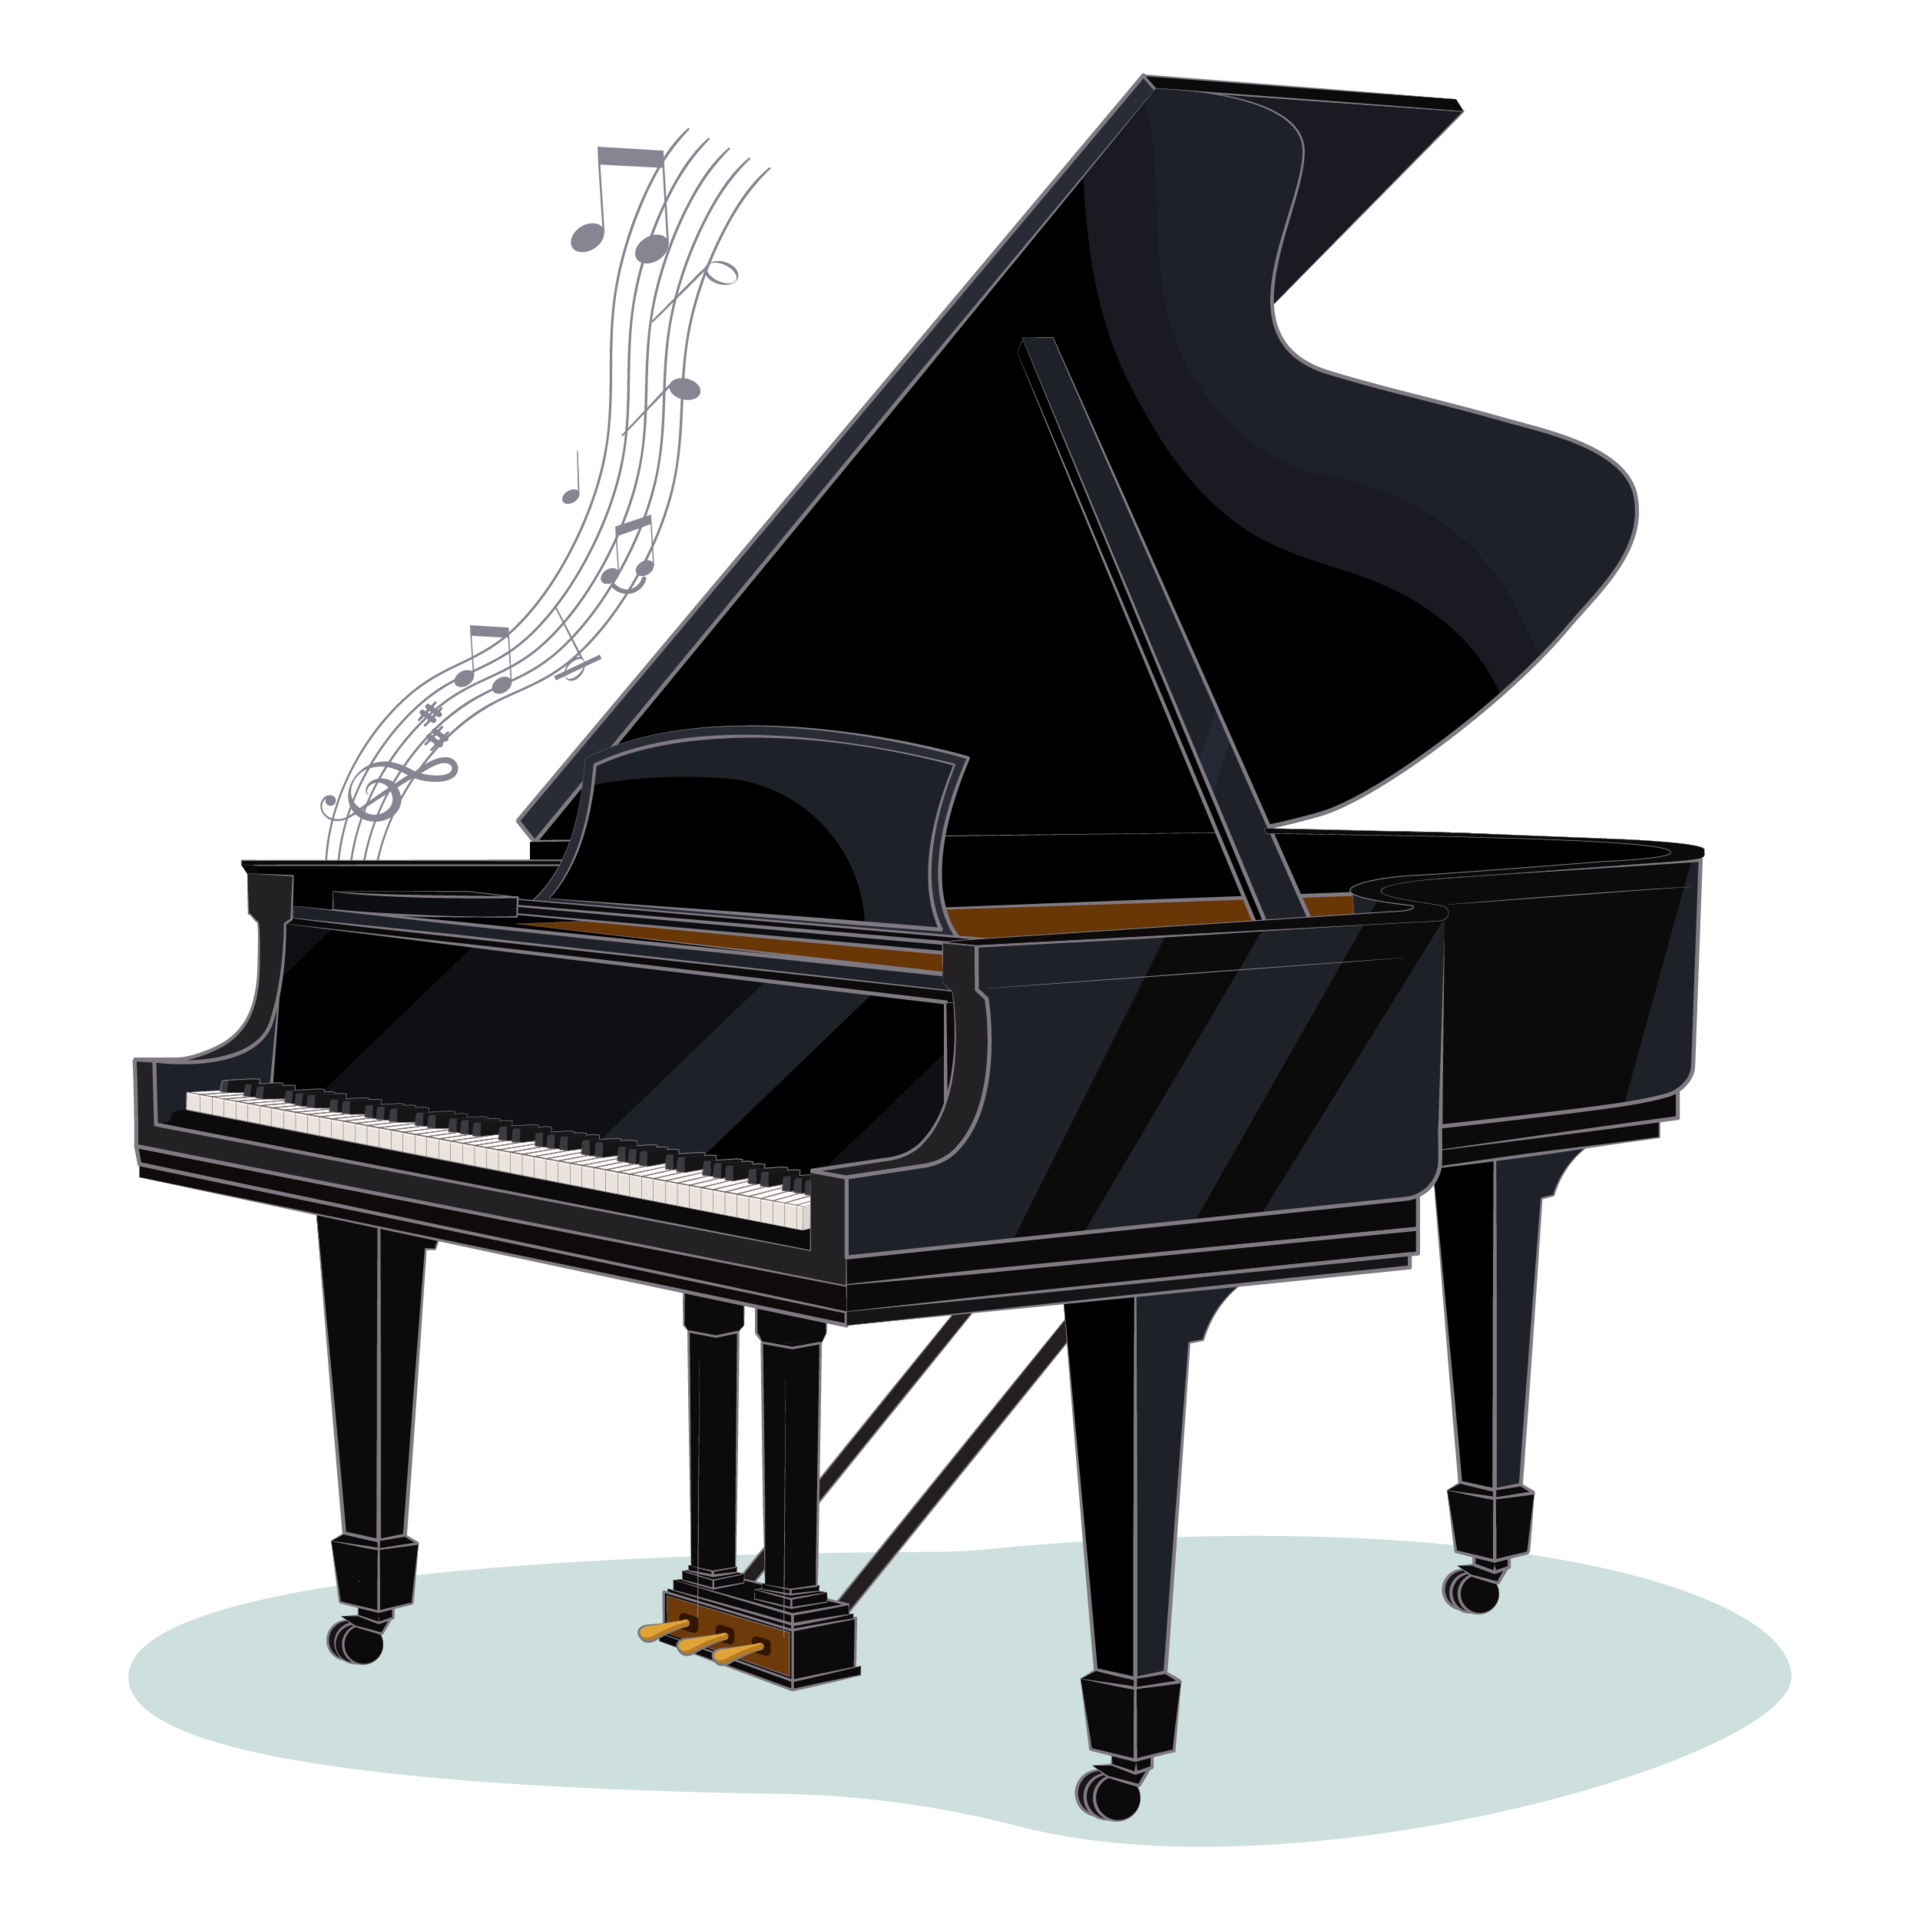 Instrumentos musicales de dibujos animados png imágenes